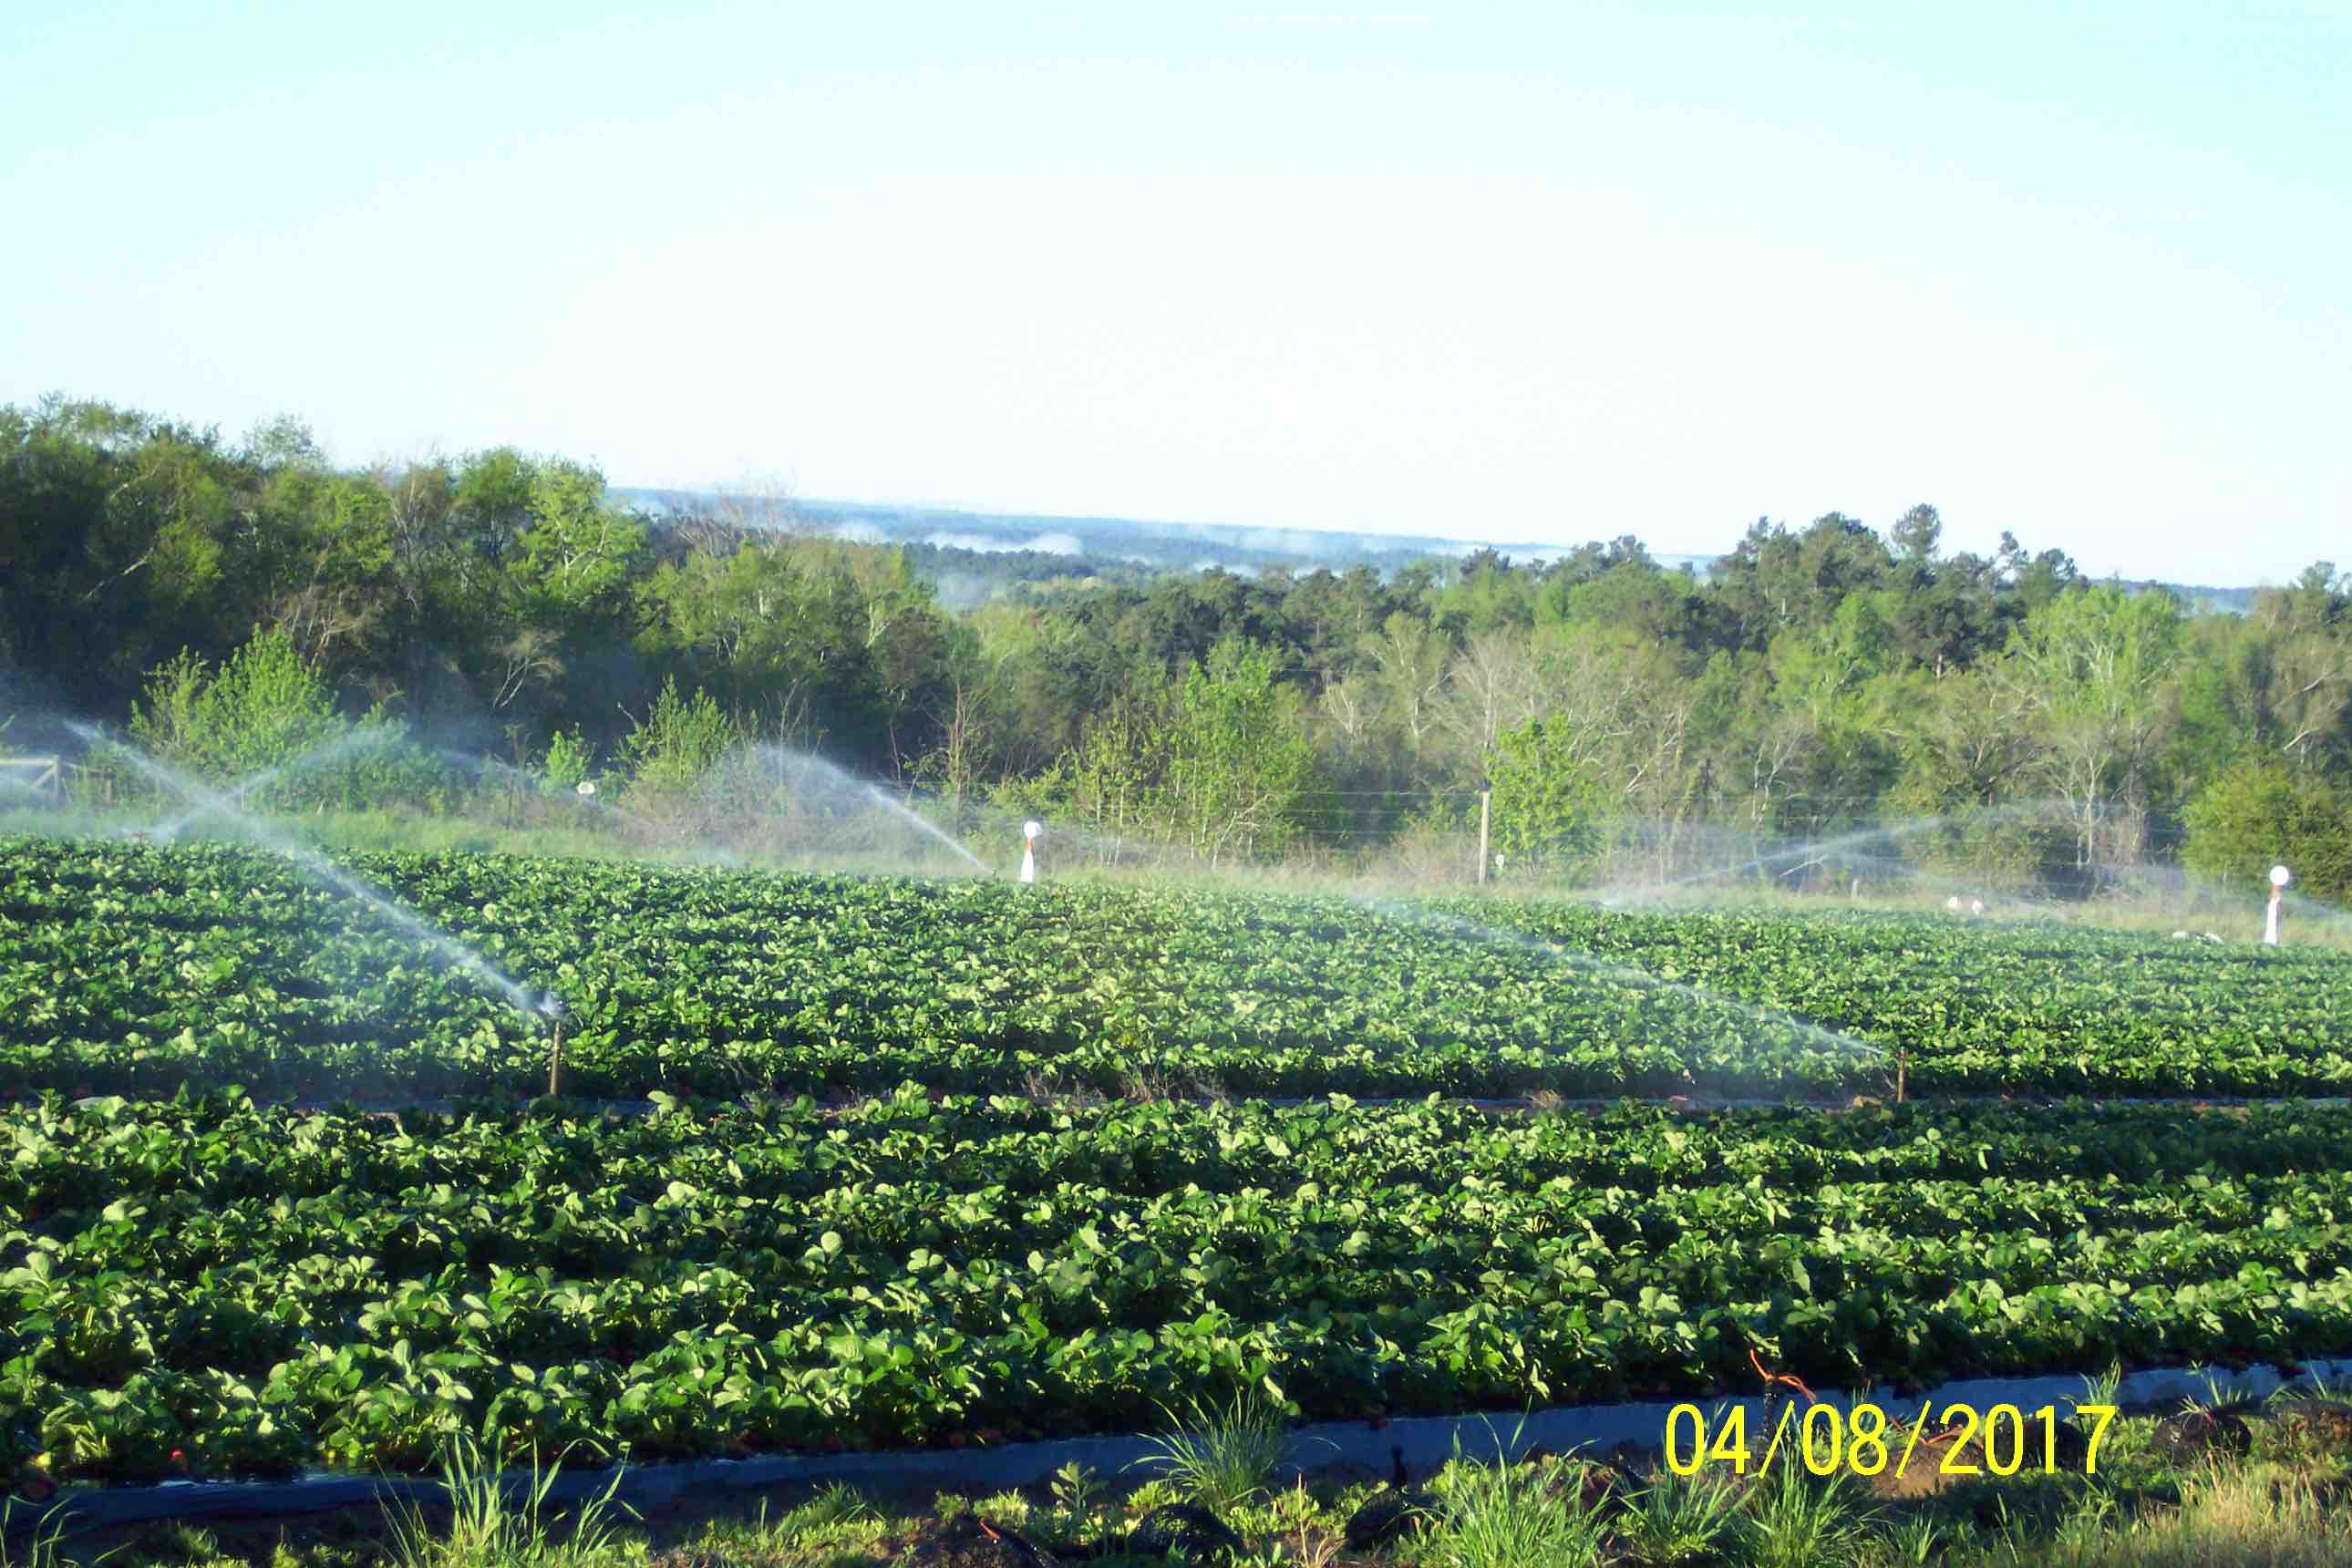 irrigation